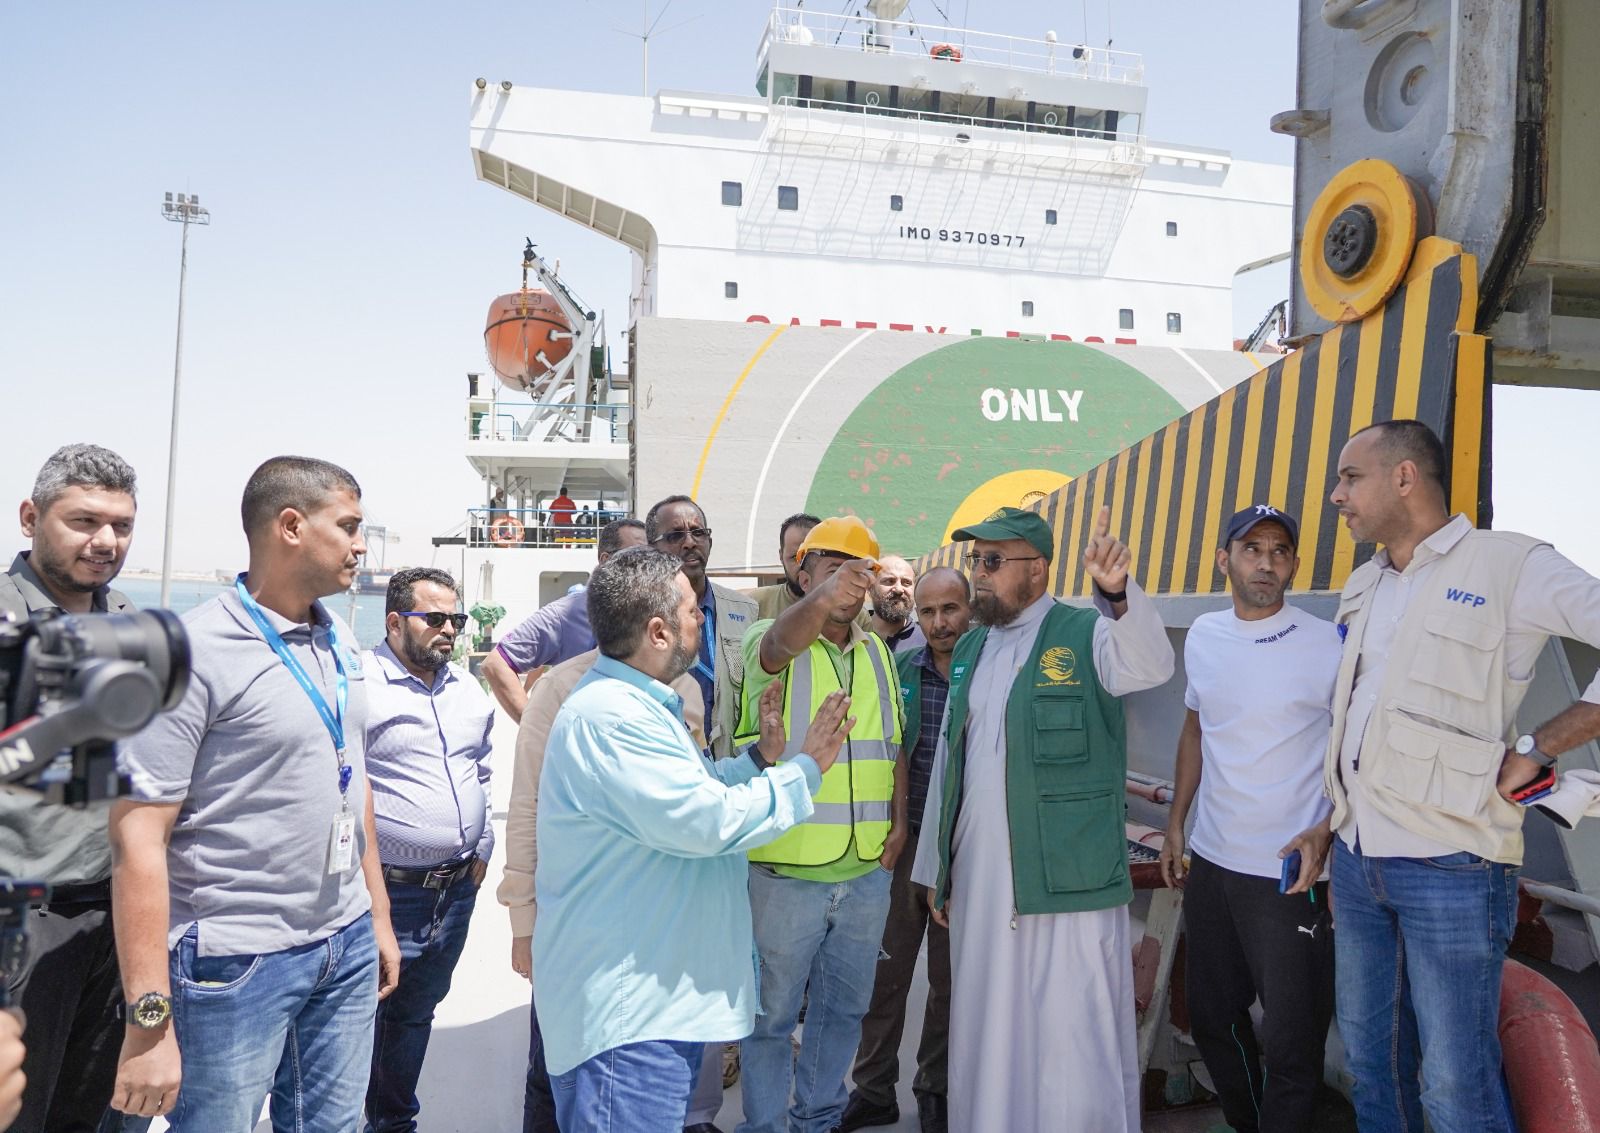 مركز الملك سلمان يسلم 24 ألف طنًا من القمح لبرنامج الأغذية العالمي في عدن